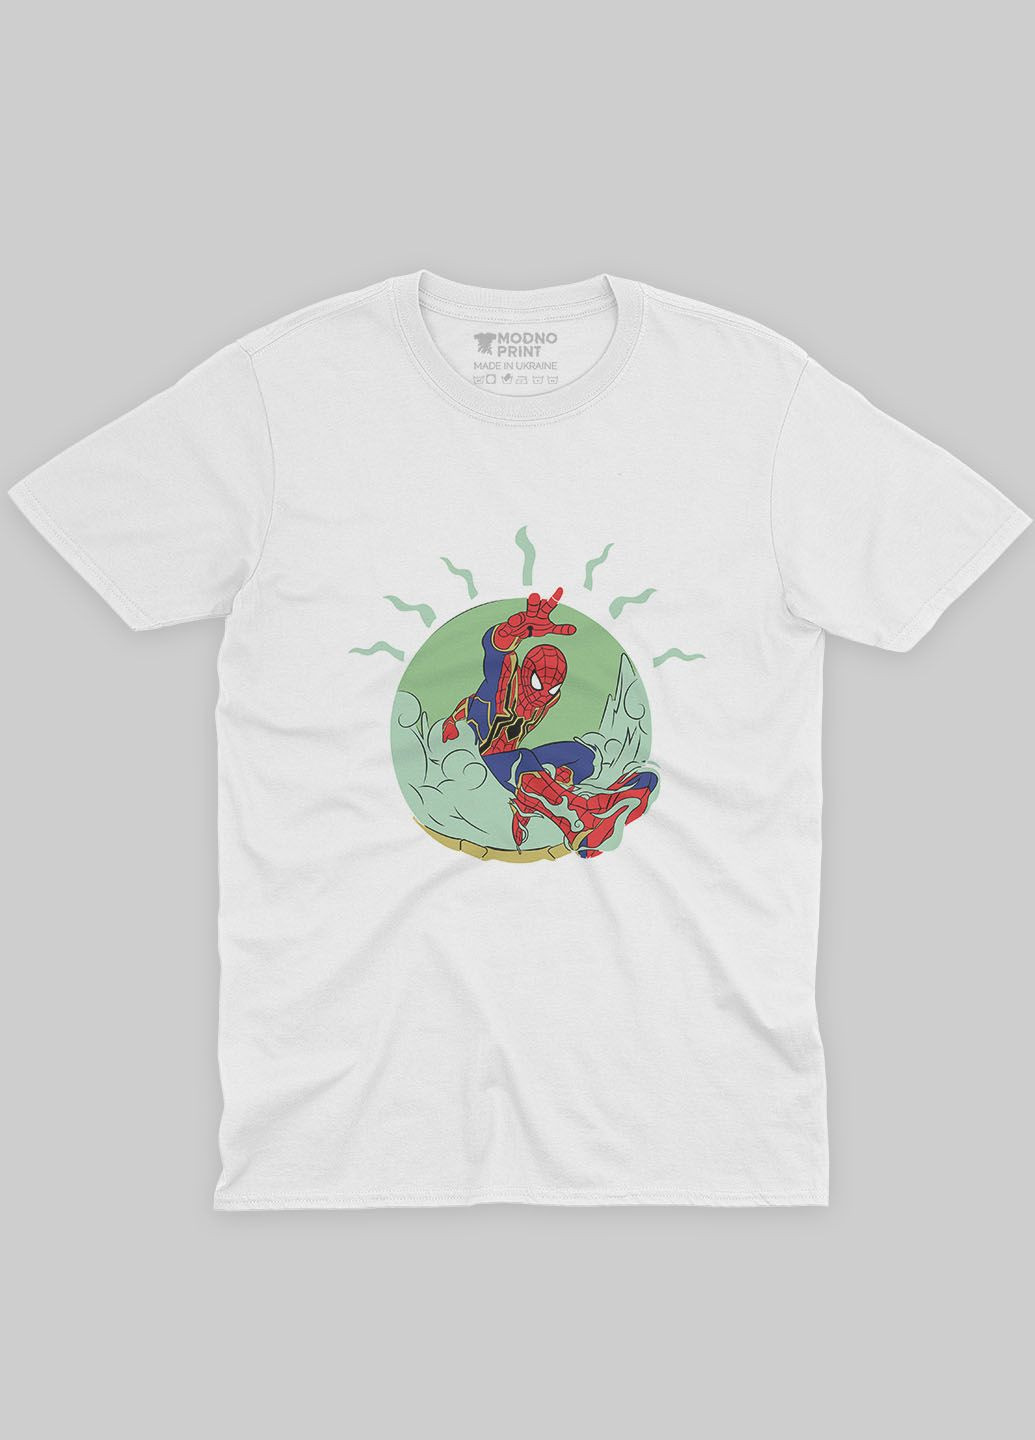 Белая демисезонная футболка для девочки с принтом супергероя - человек-паук (ts001-1-whi-006-014-021-g) Modno